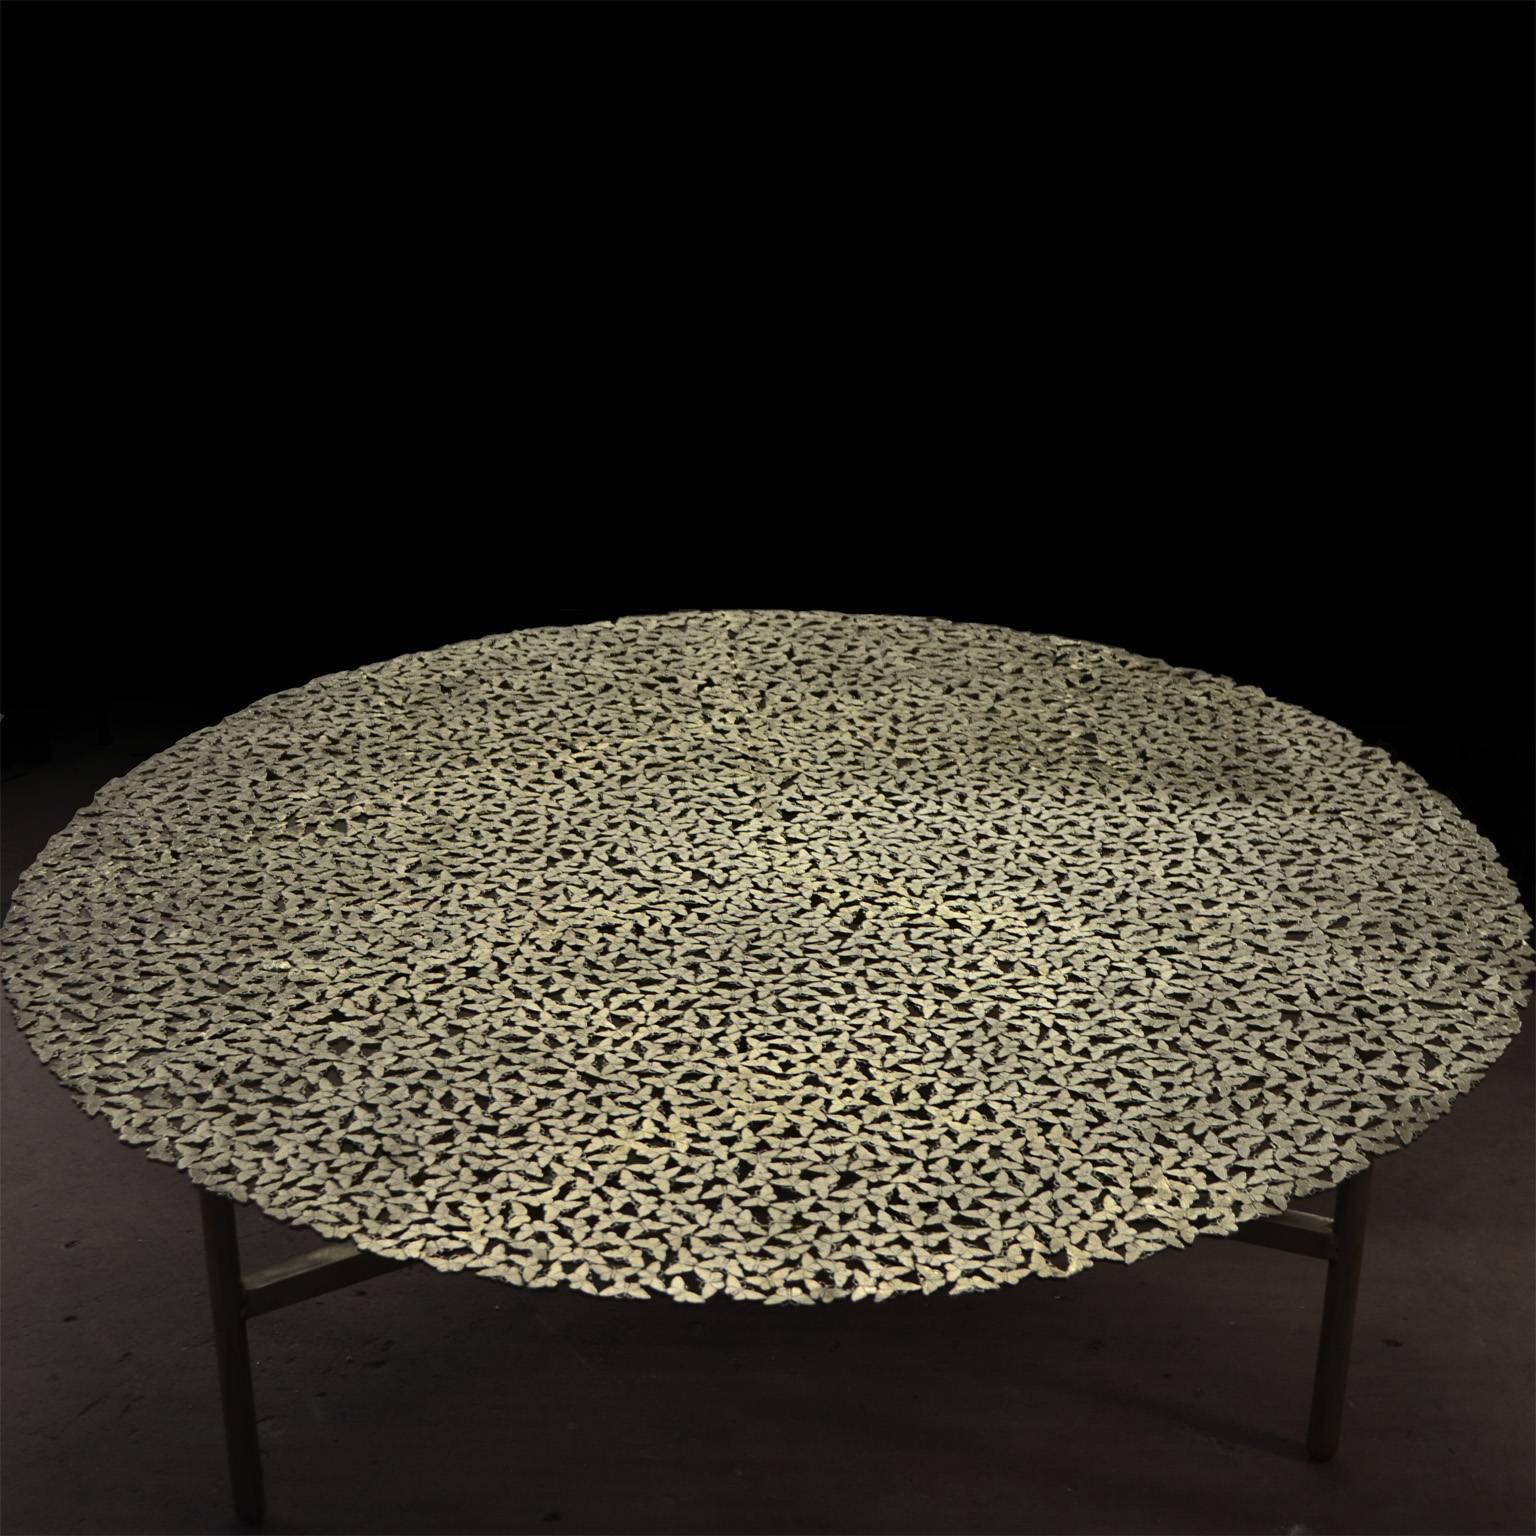 Ein Schwarm von Schmetterlingen, zart wie ein Spitzentischtuch, formt eine unvergängliche Tischplatte aus weißer Bronze, die von italienischen Meisterhandwerkern im Wachsausschmelzverfahren gegossen wurde. Ein skulpturaler Tisch, der sowohl für den